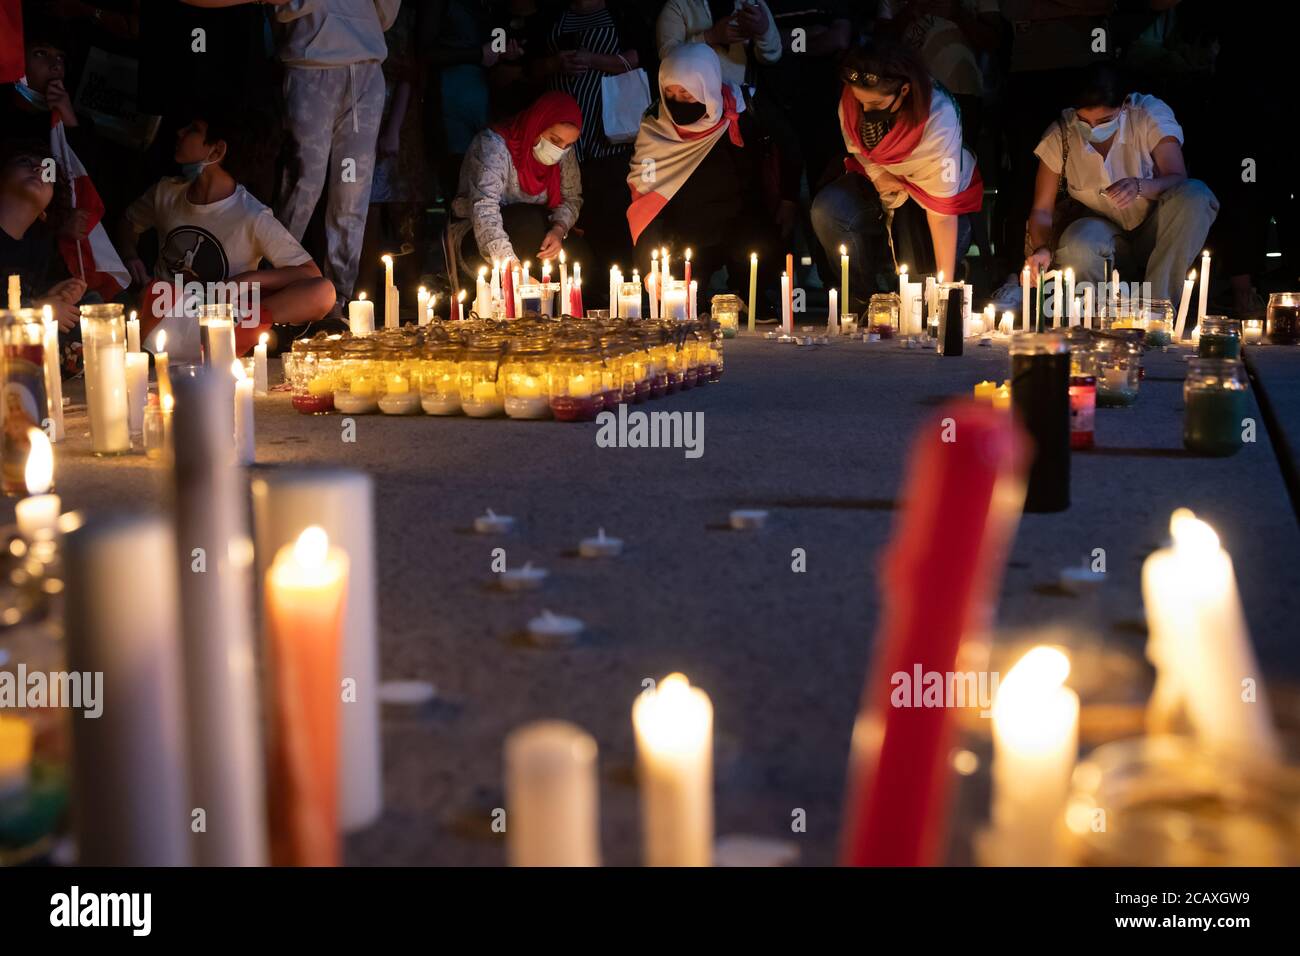 Menschen zünden Kerzen an einer Mahnwache in Toronto an, die zum Gedenken an die Opfer der Explosion am 4. August in Beirut im Libanon gehalten wird. Stockfoto